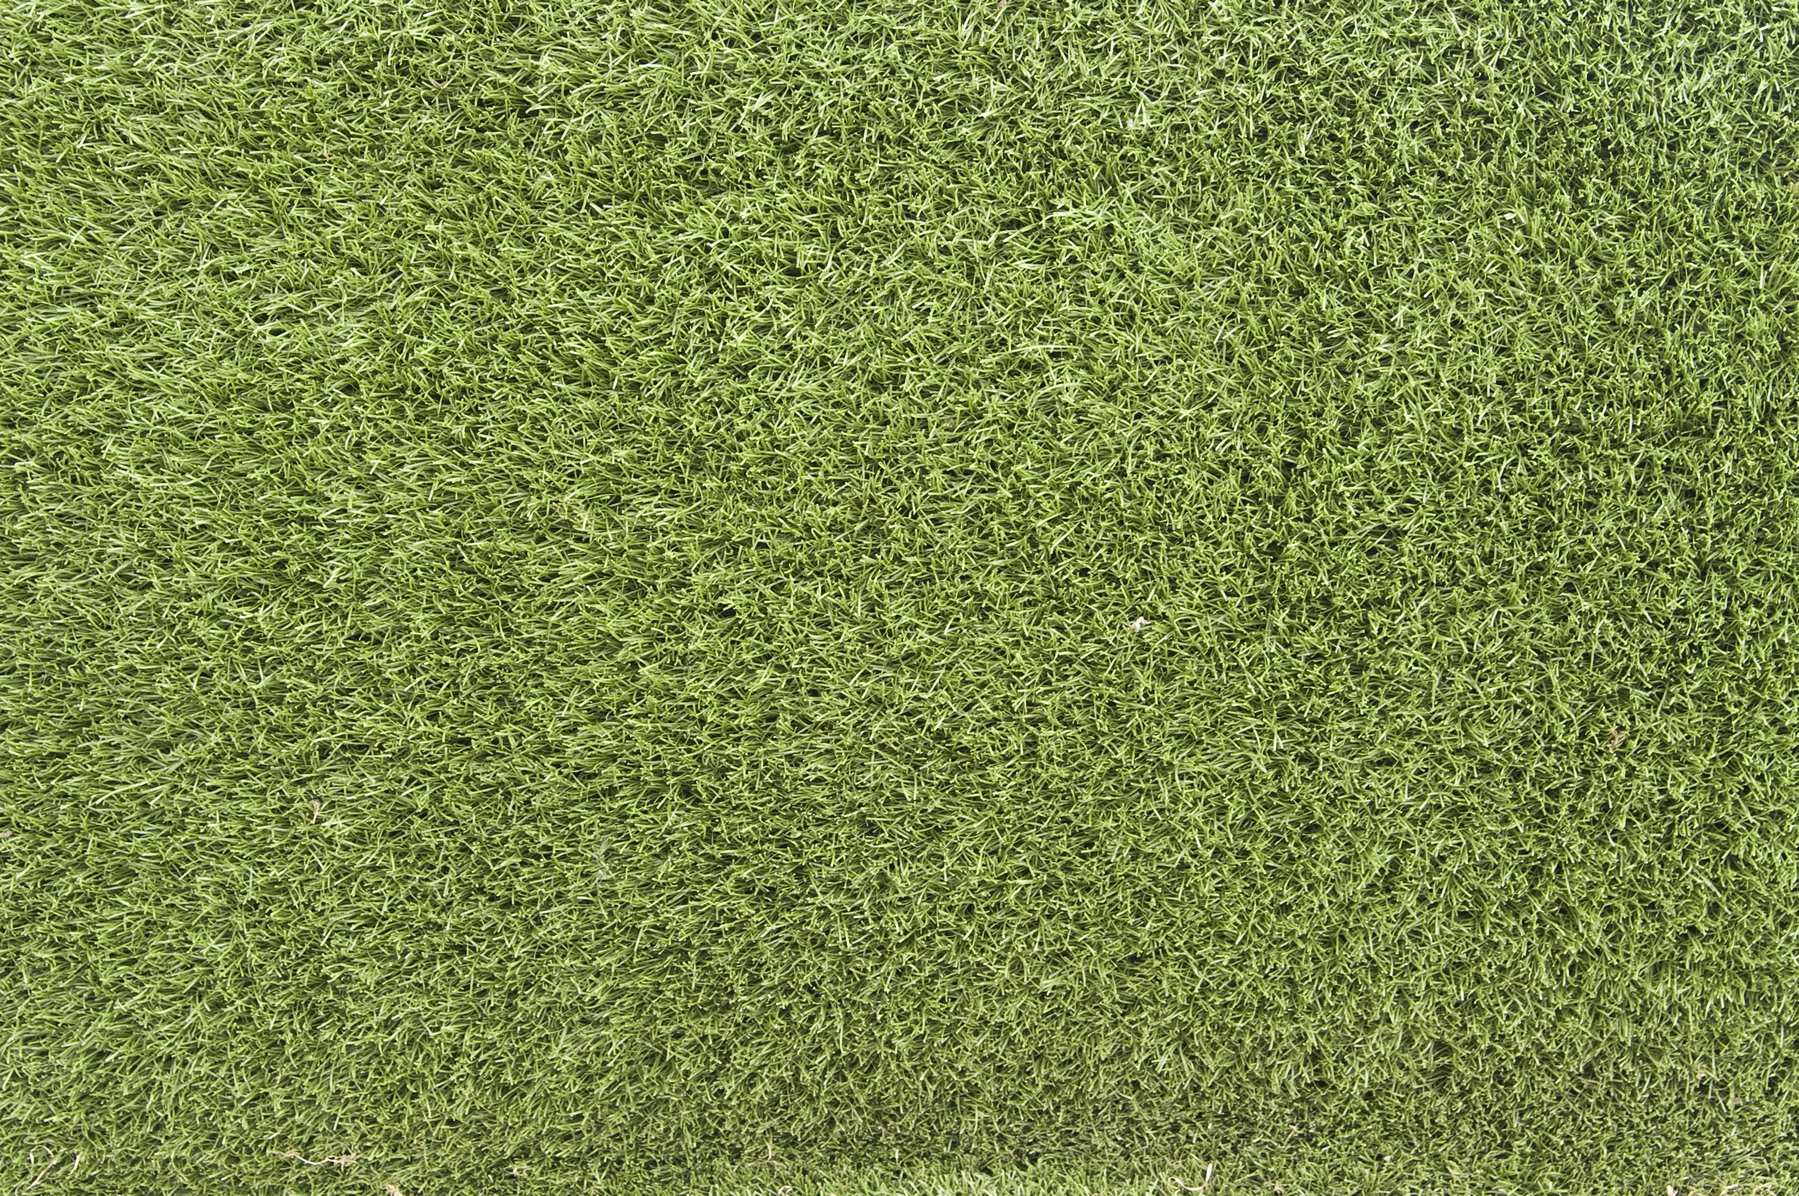 green grass, background, texture, download photo, green grass texture